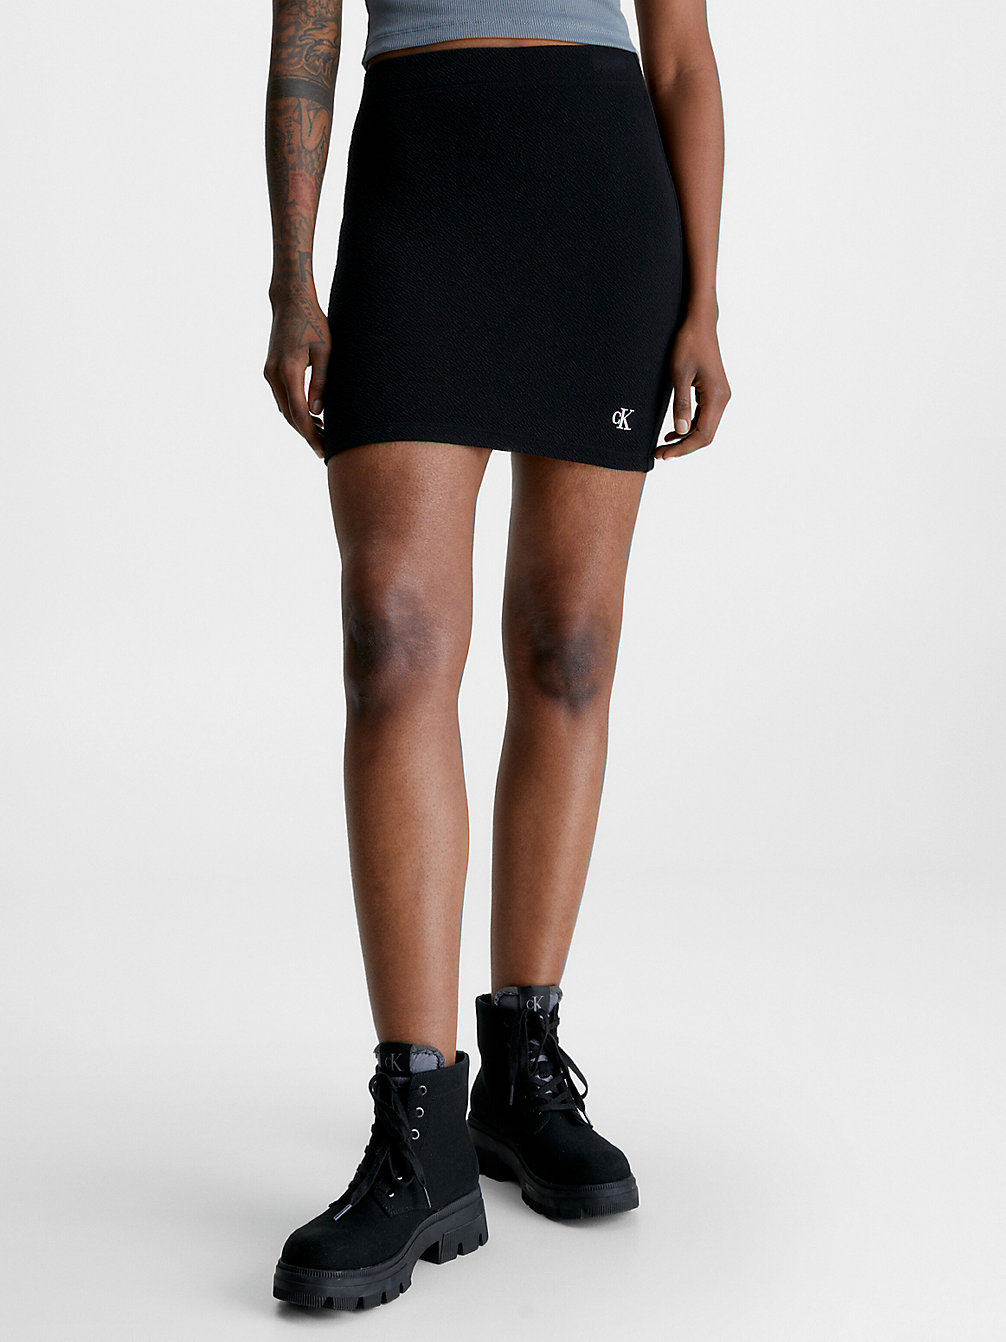 CK BLACK > Spódnica Mini Z Marszczonego, Rozciągliwego Materiału > undefined Kobiety - Calvin Klein